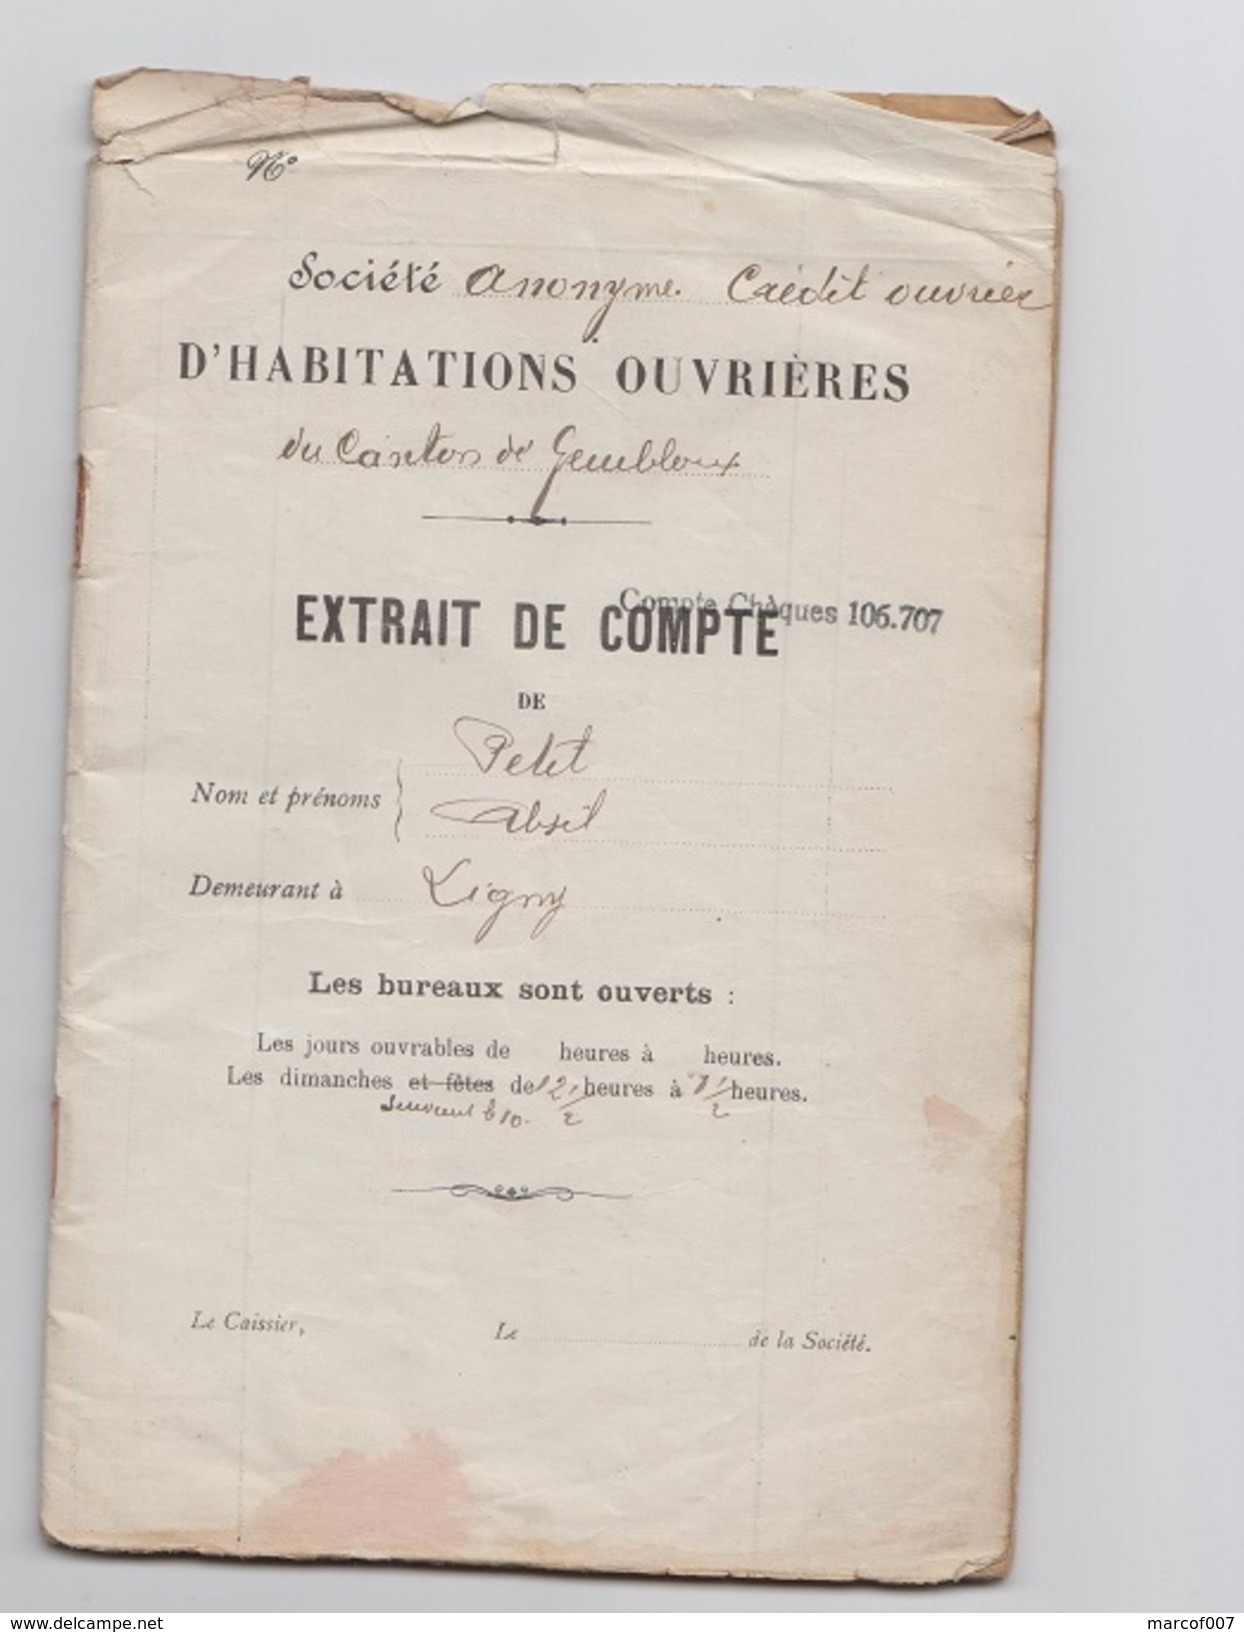 1923 - Societe Anonyme Credit Ouvrier - Extrait De Compte - Mr PETIT - LIGNY - Bank & Insurance